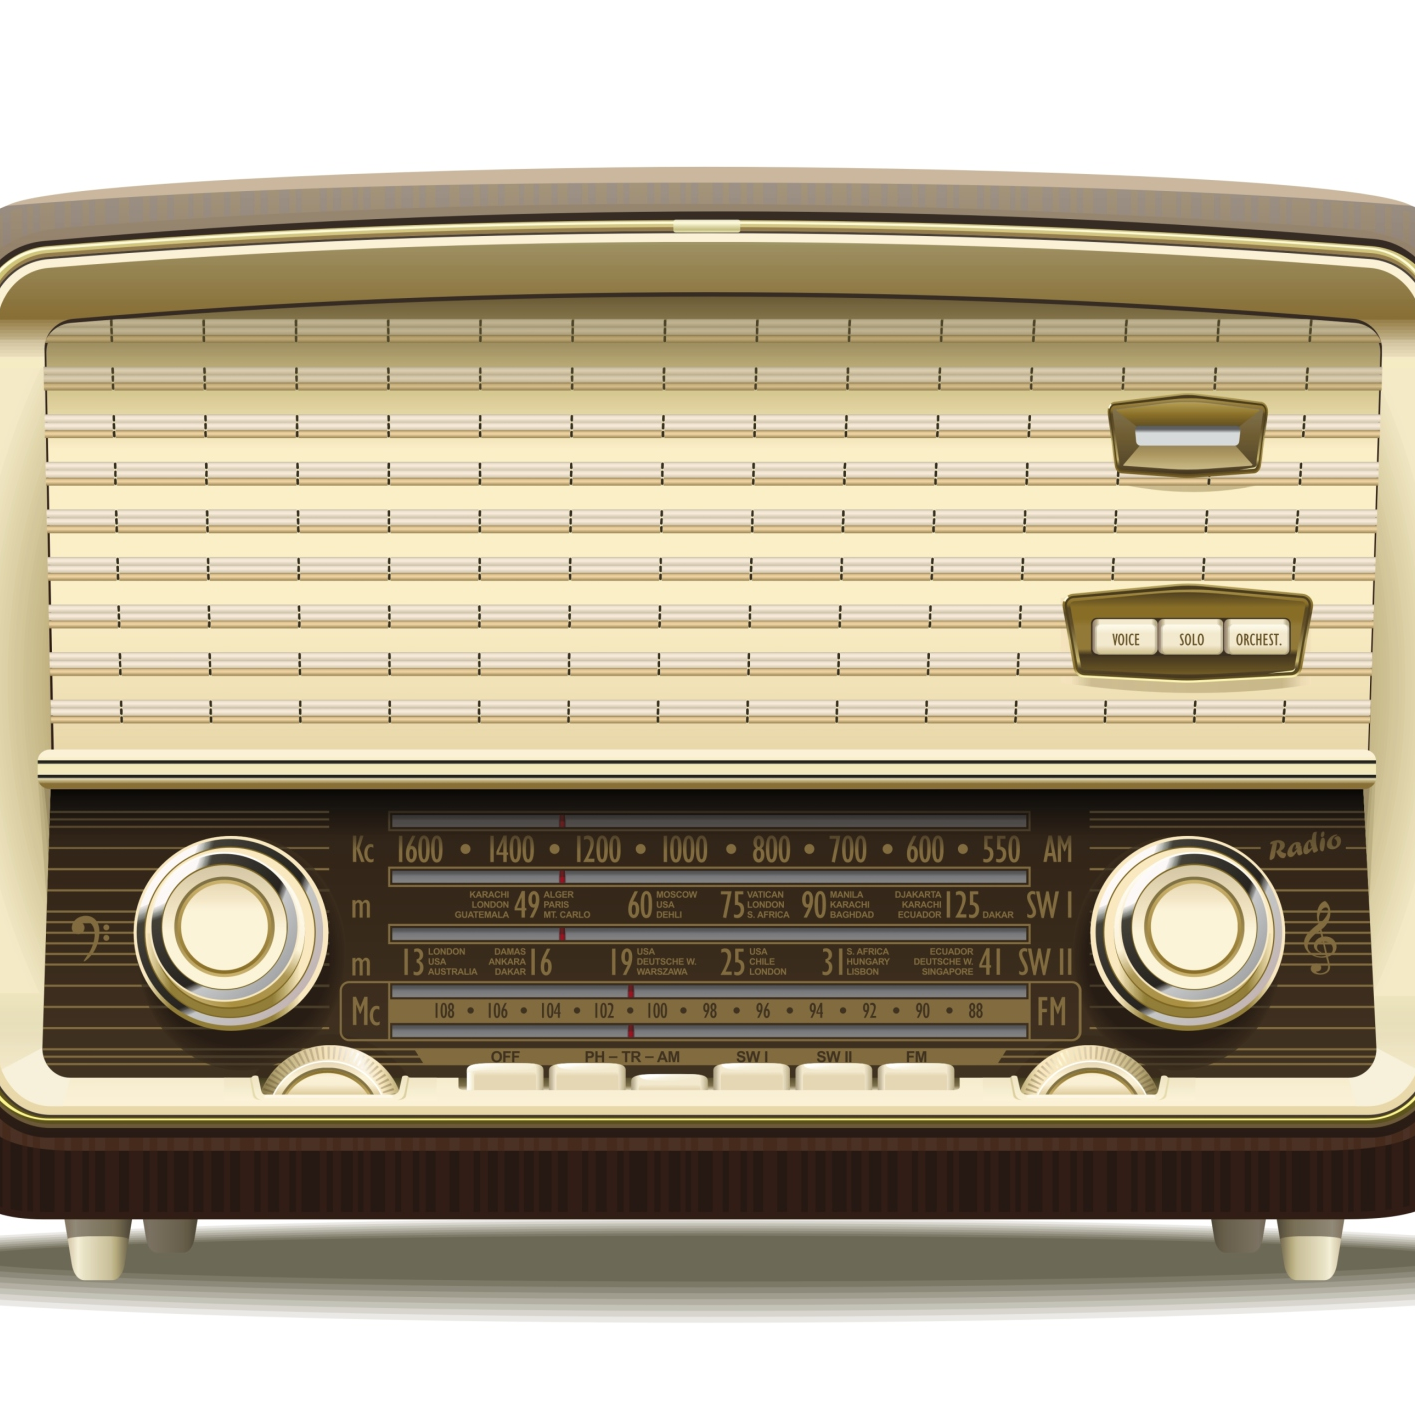 Rad ii. Старинный радиоприемник. Радиоприемник в интерьере. Радио. Радиоприемник в стиле ретро.